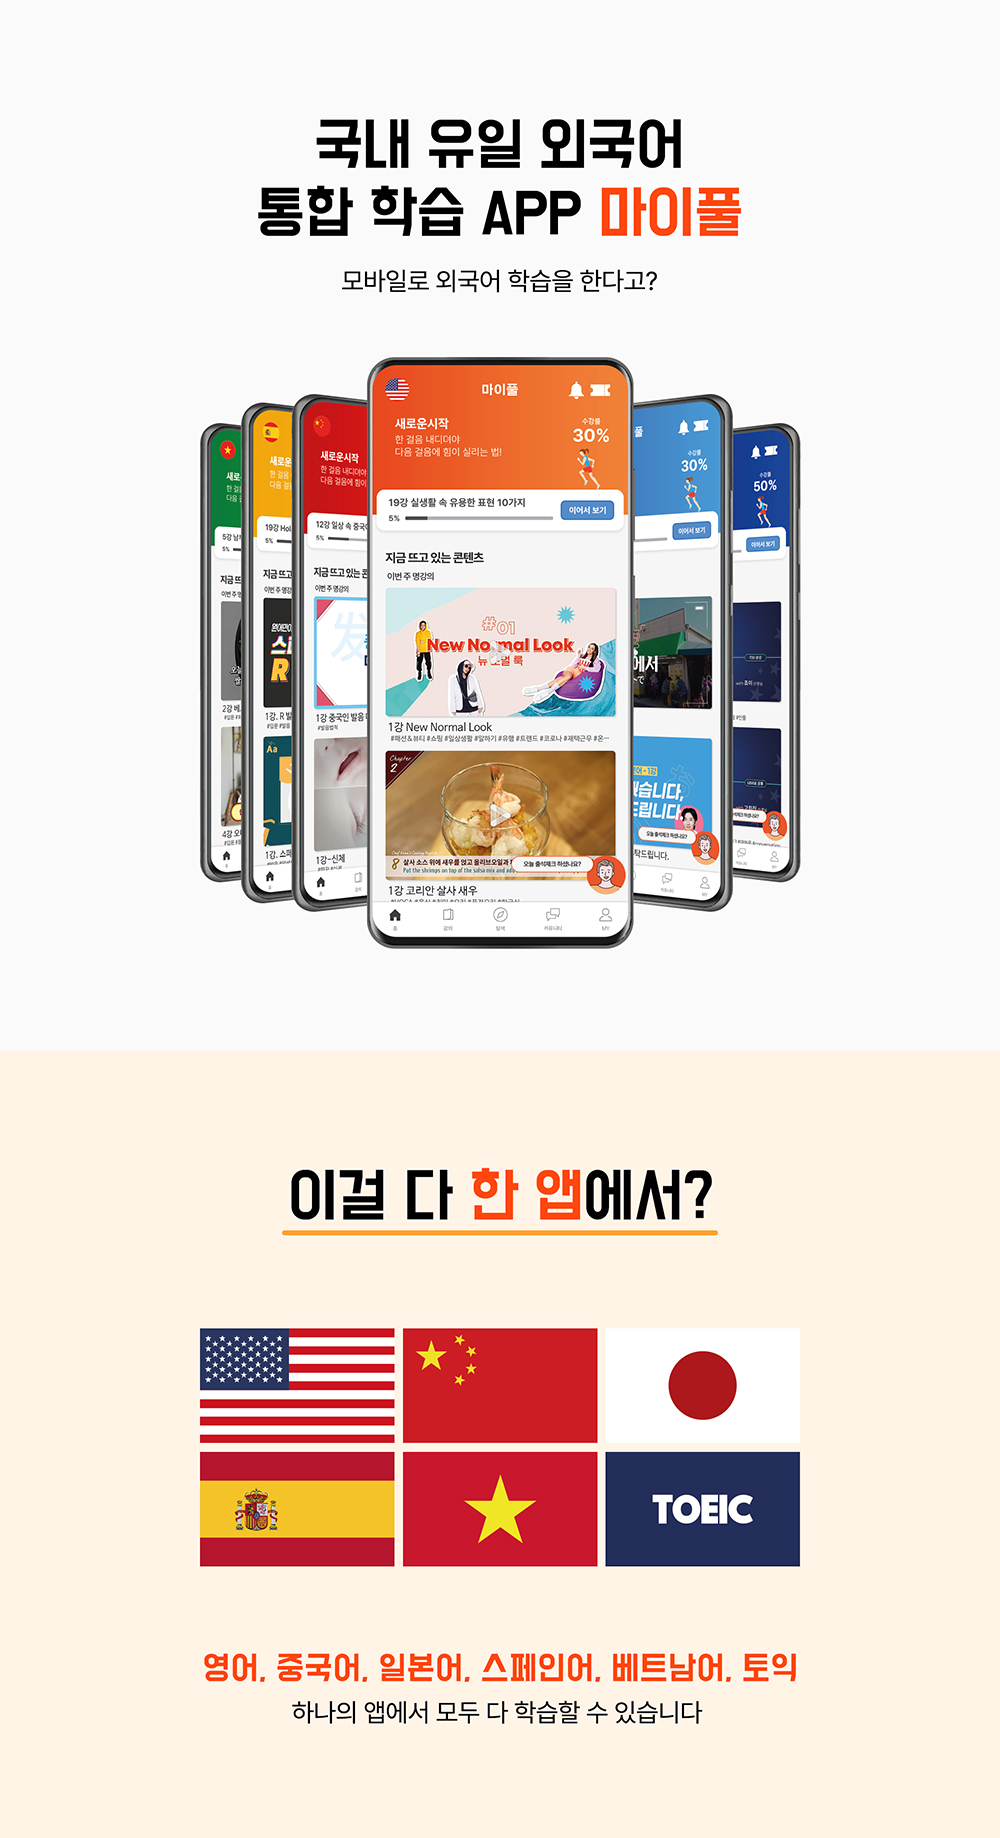 
	모바일로 외국어를 학습할 수 있는, 국내 유일 외국어 통합 학습 앱 마이풀입니다. 영어, 중국어, 일본어, 스페인어, 베트남어, 토익을 하나의 앱에서 모두 다 학습할 수 있습니다.
